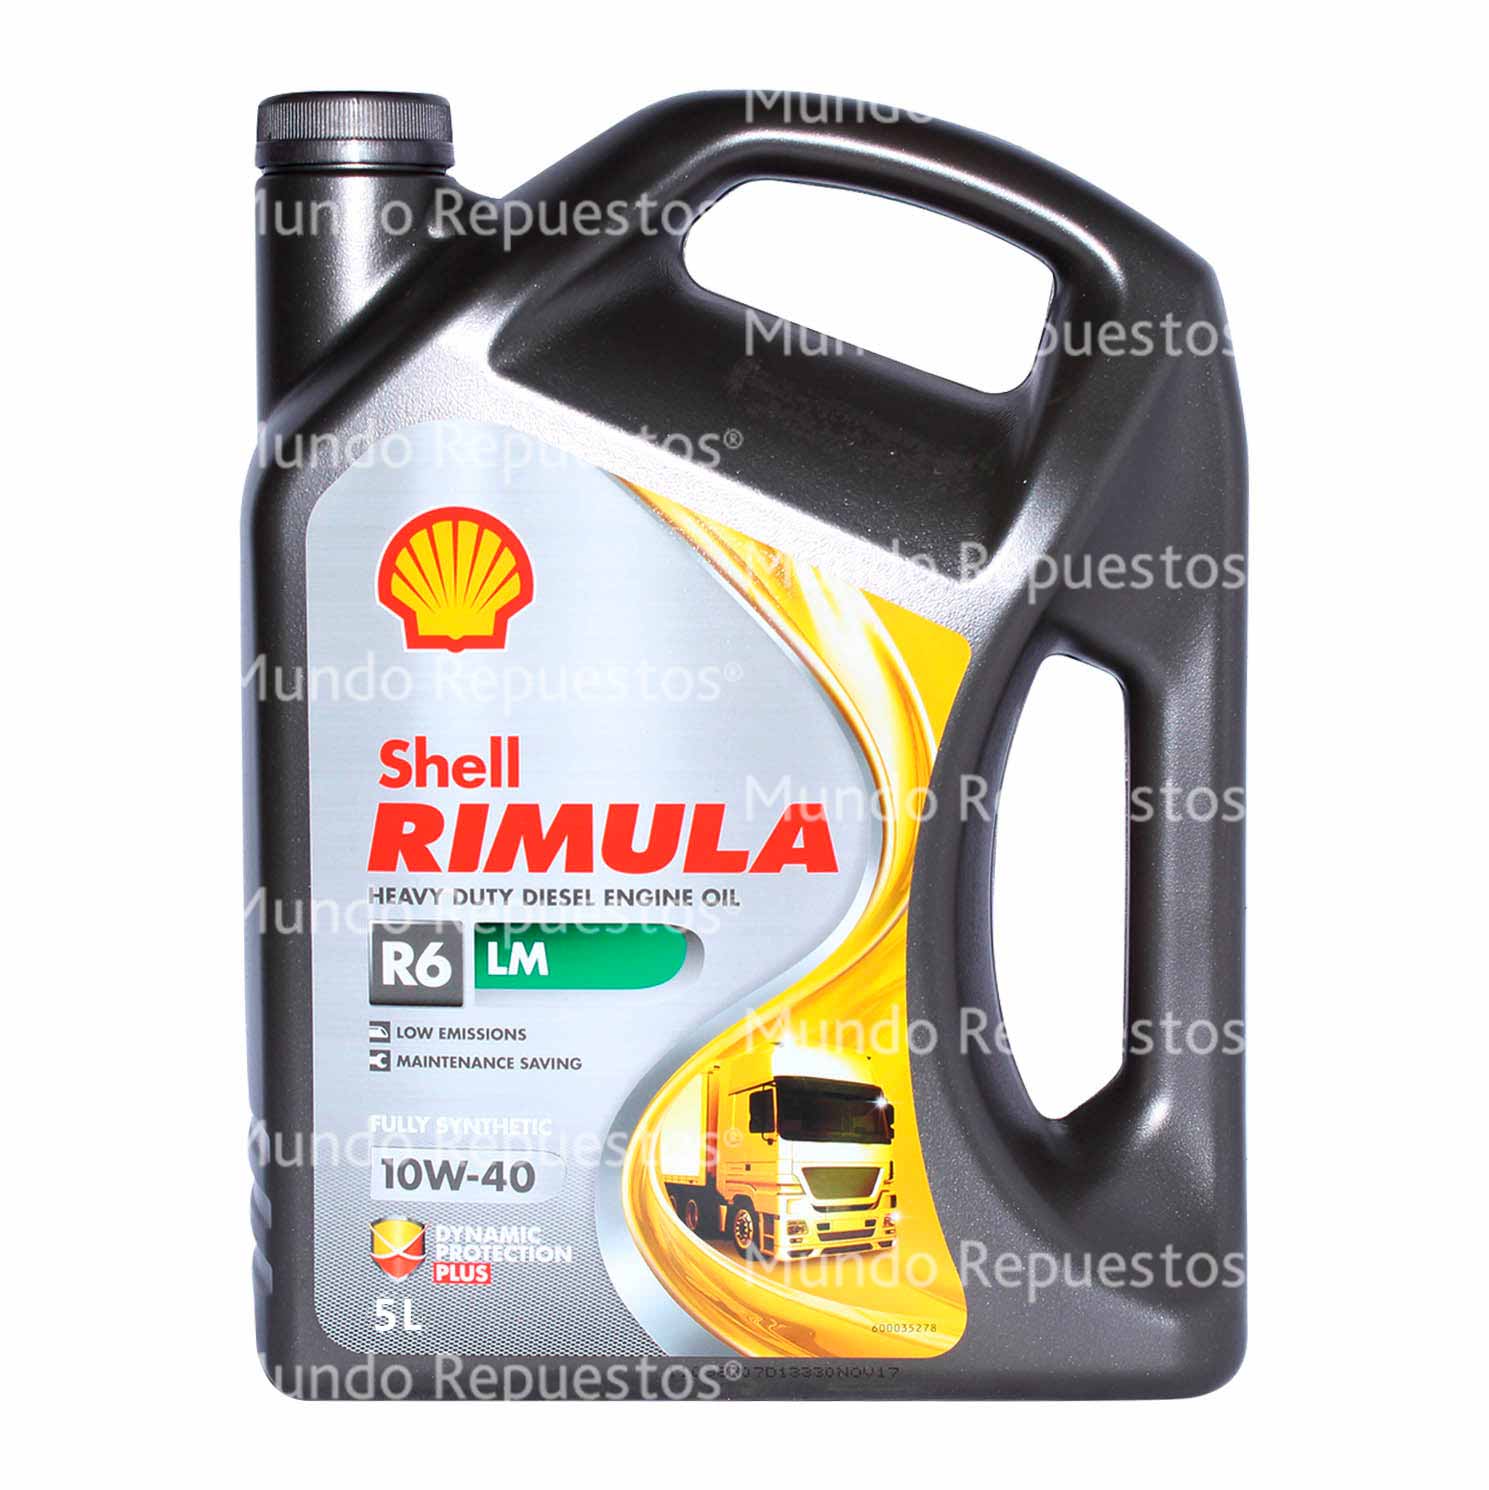 Aceite marca Shell disponible en Mundo Repuestos